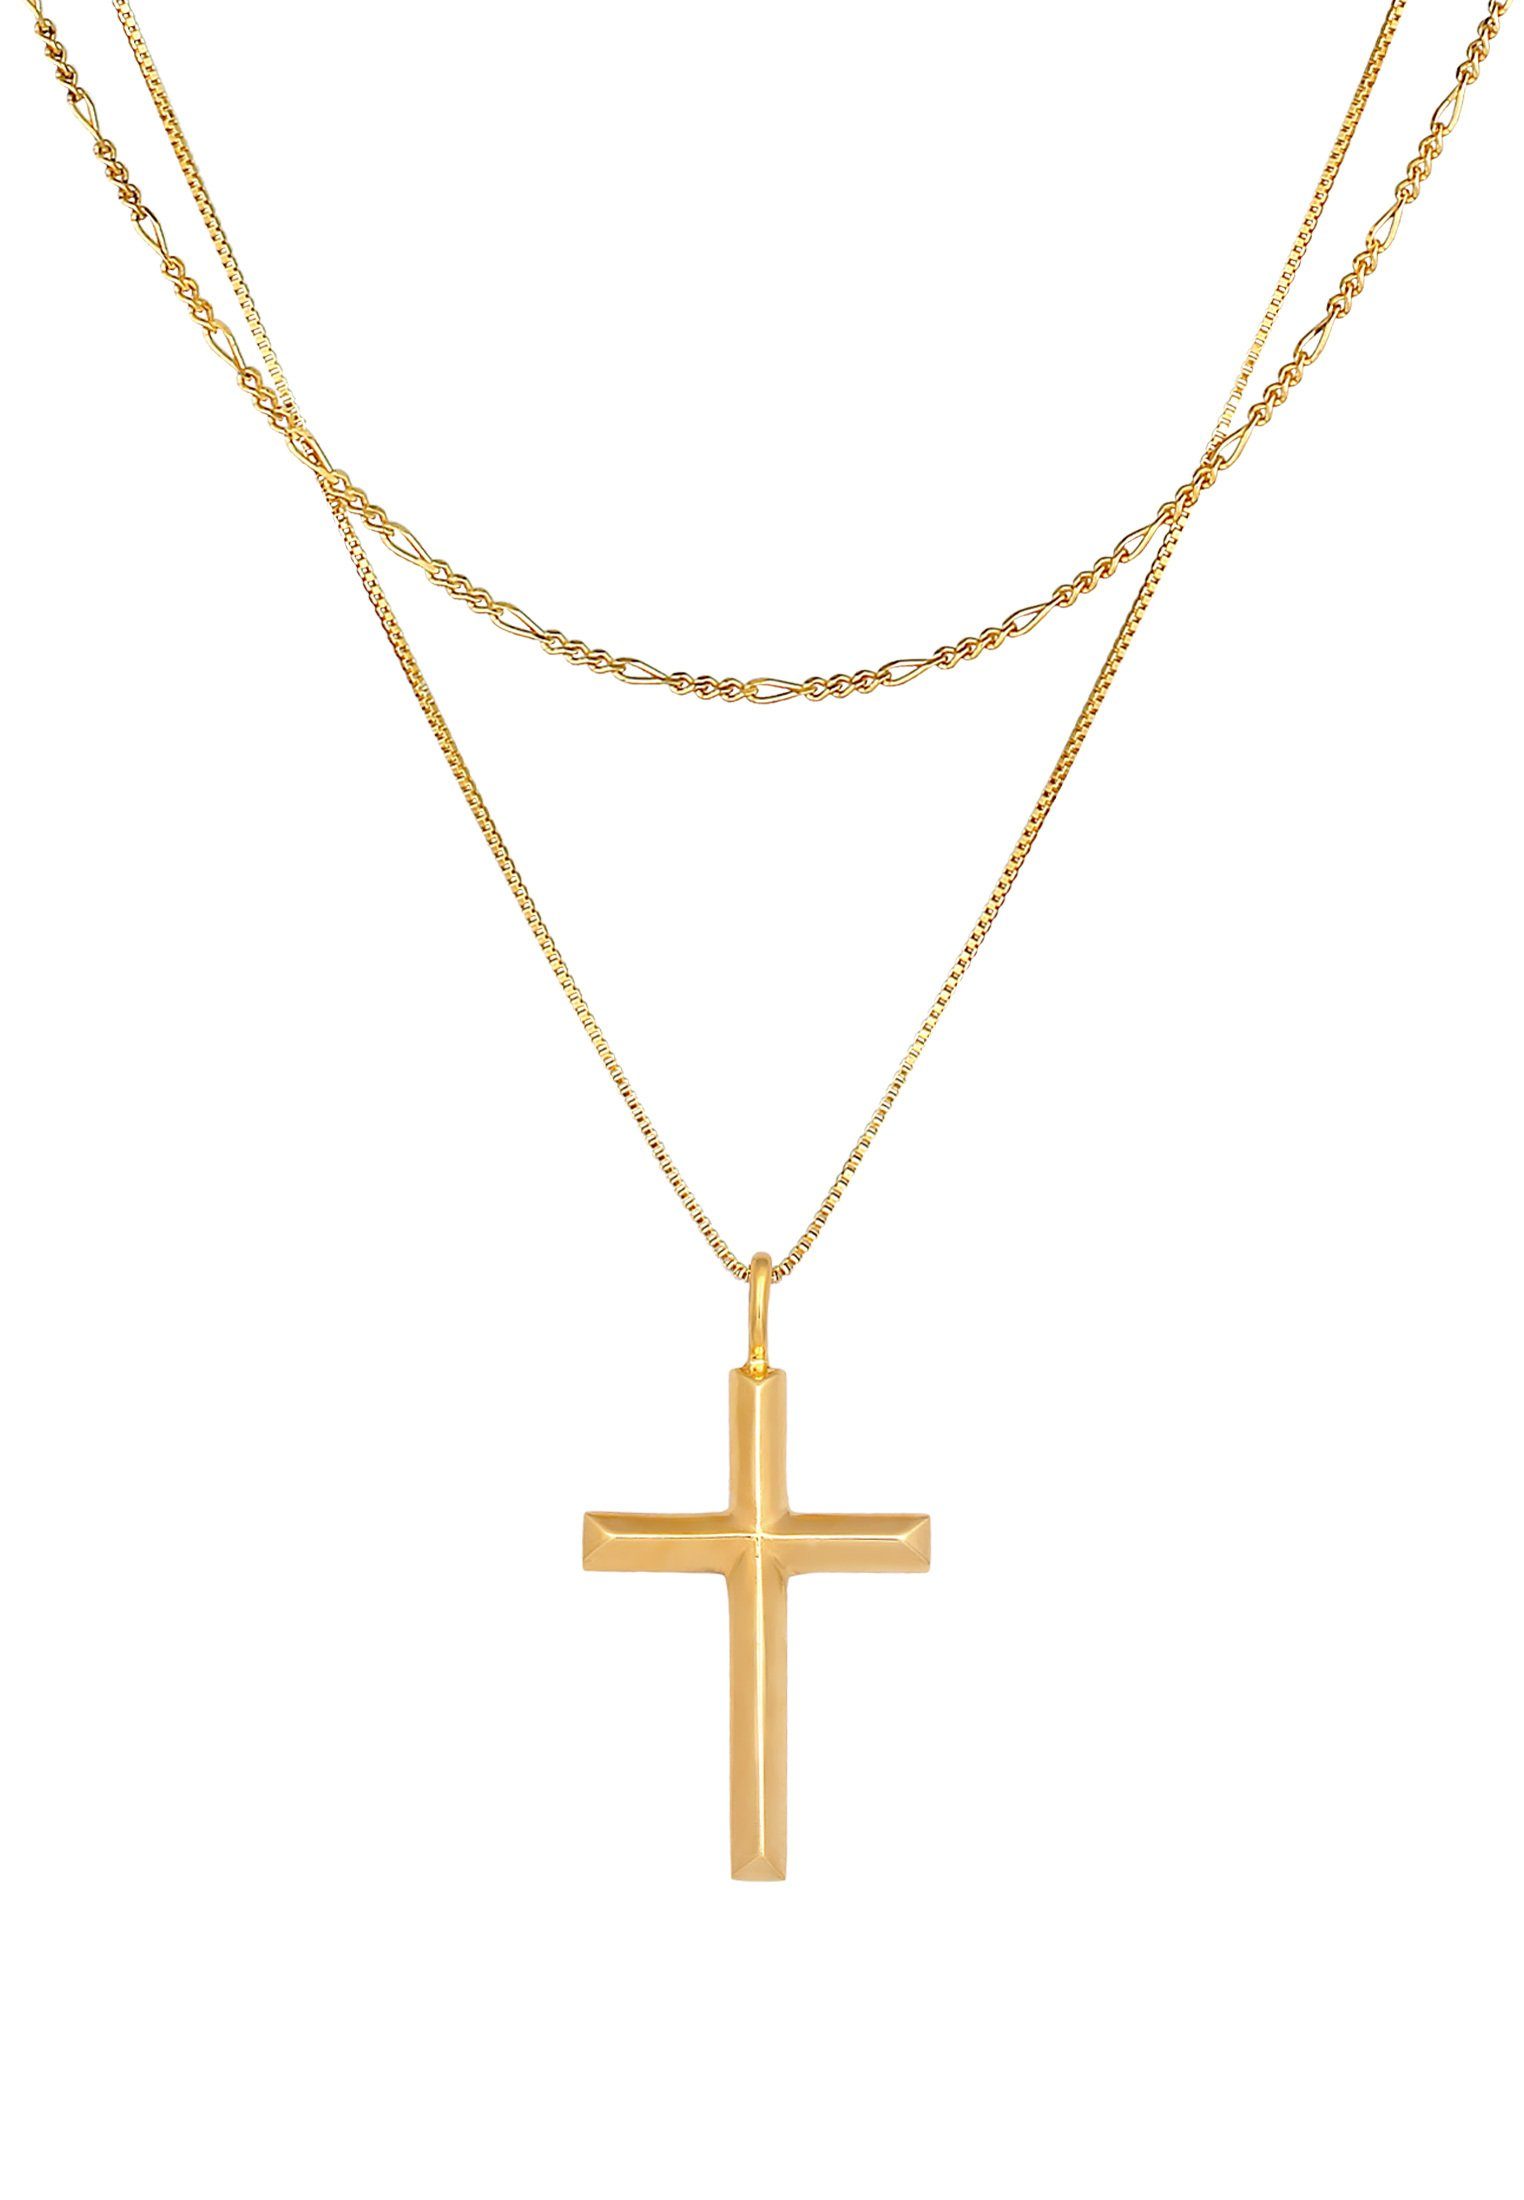 Kuzzoi Kette mit Anhänger Herren Kreuz 925 Layer Kreuz Religion Gold Silber